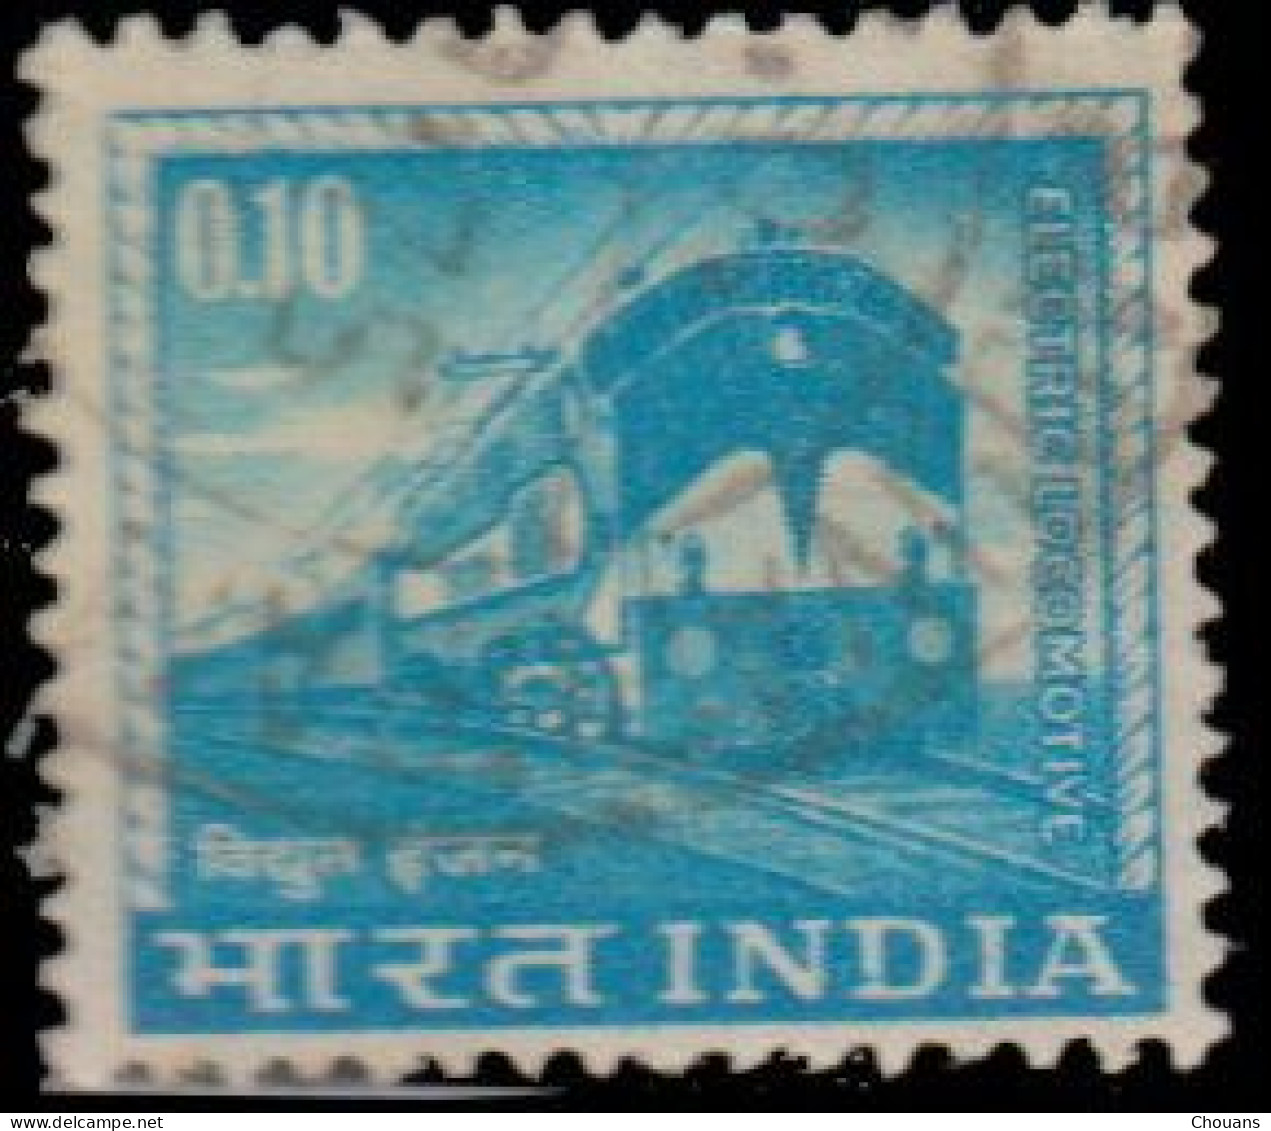 Inde 1965. ~ YT 192 (par 6) - Locomotive électrique - Neufs